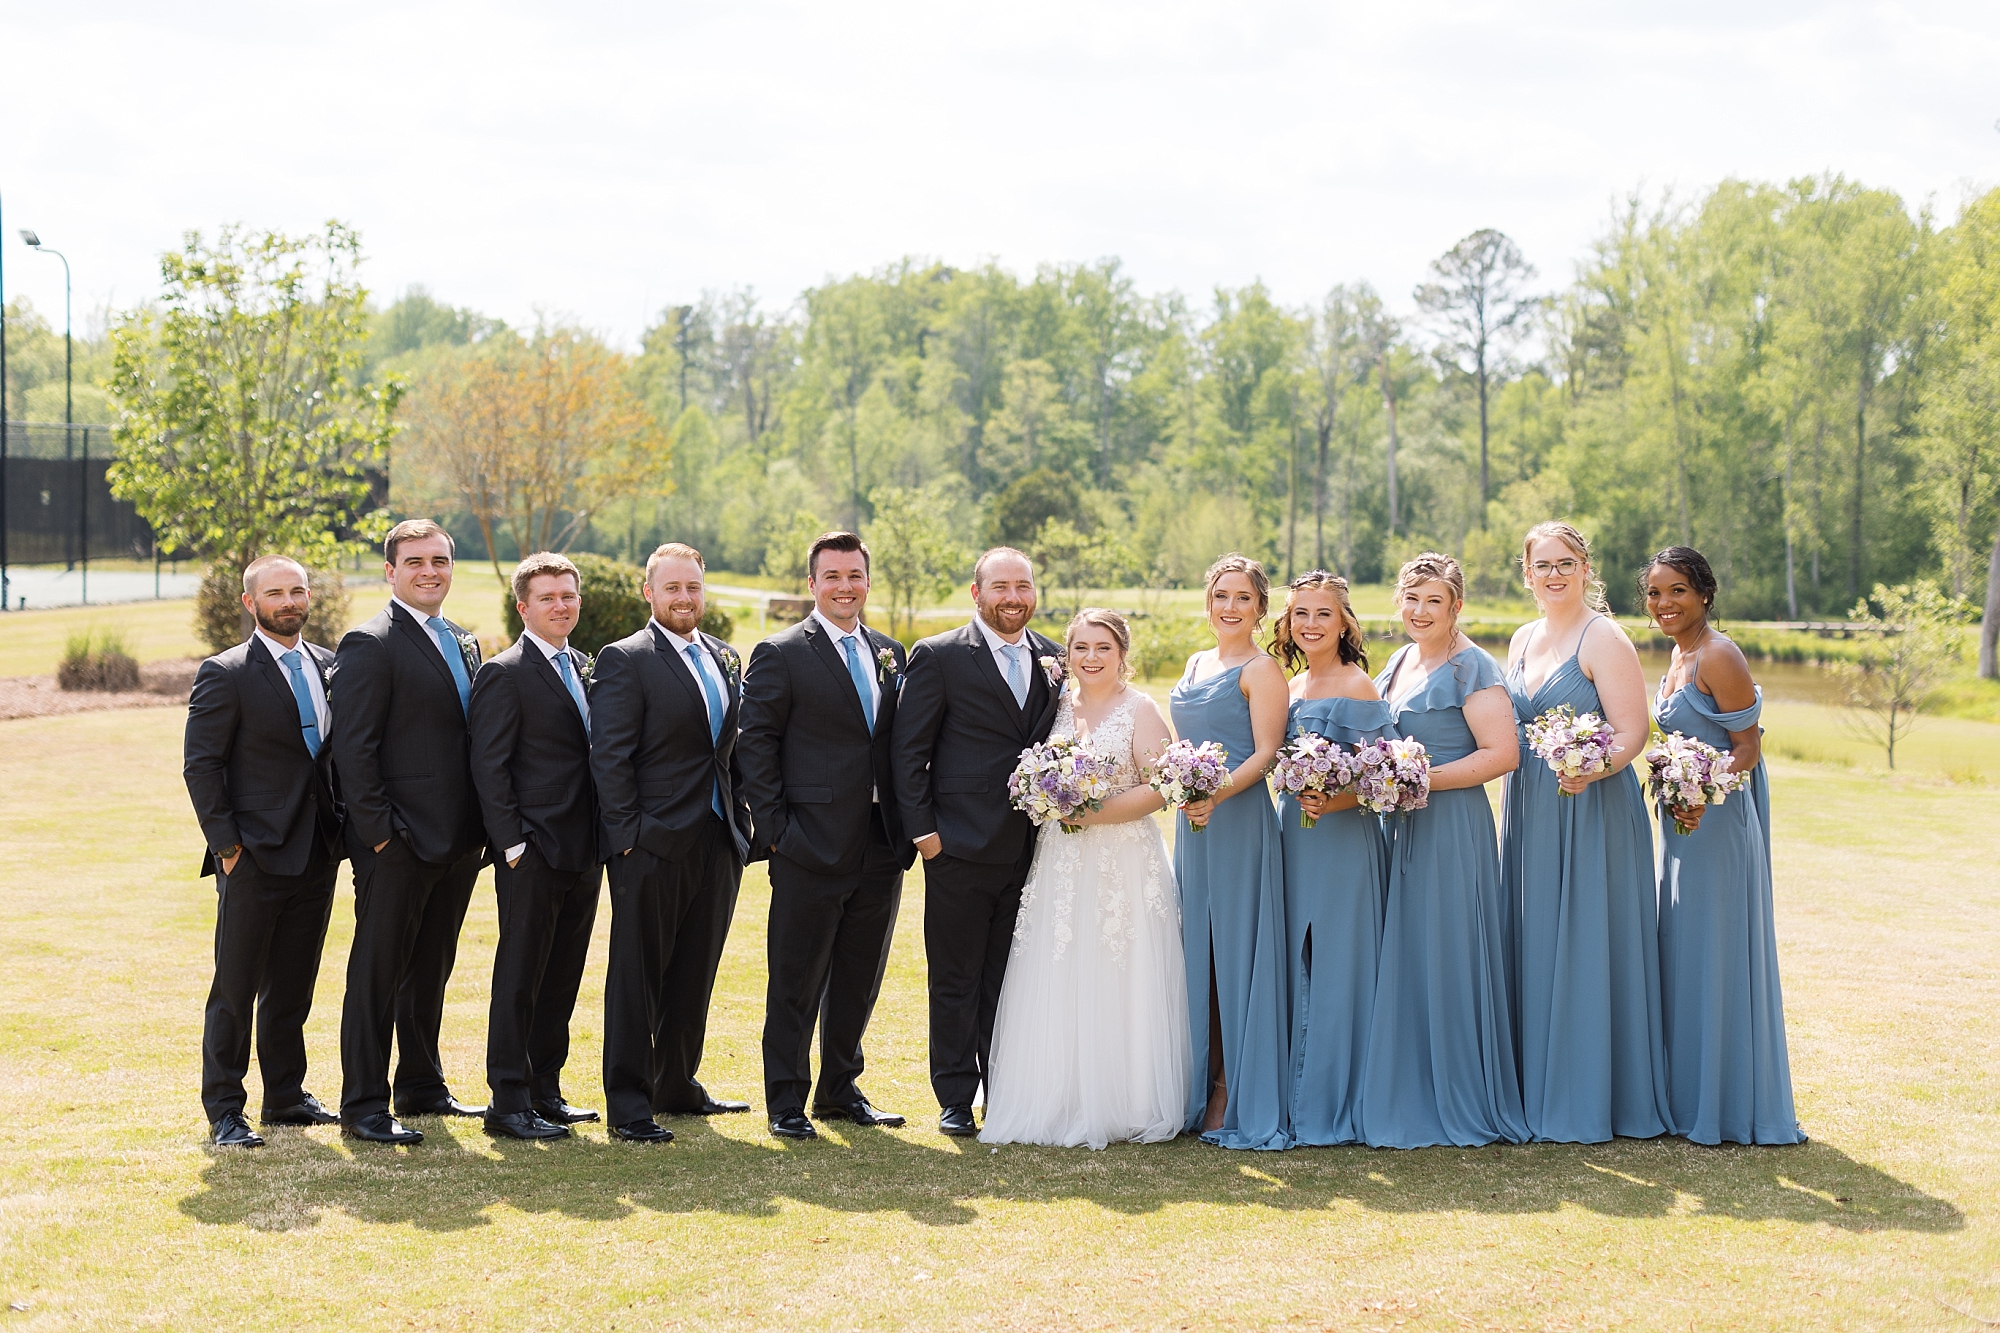 Wedding party - Raleigh NC Wedding Photographer - Sarah Hinckley Photography